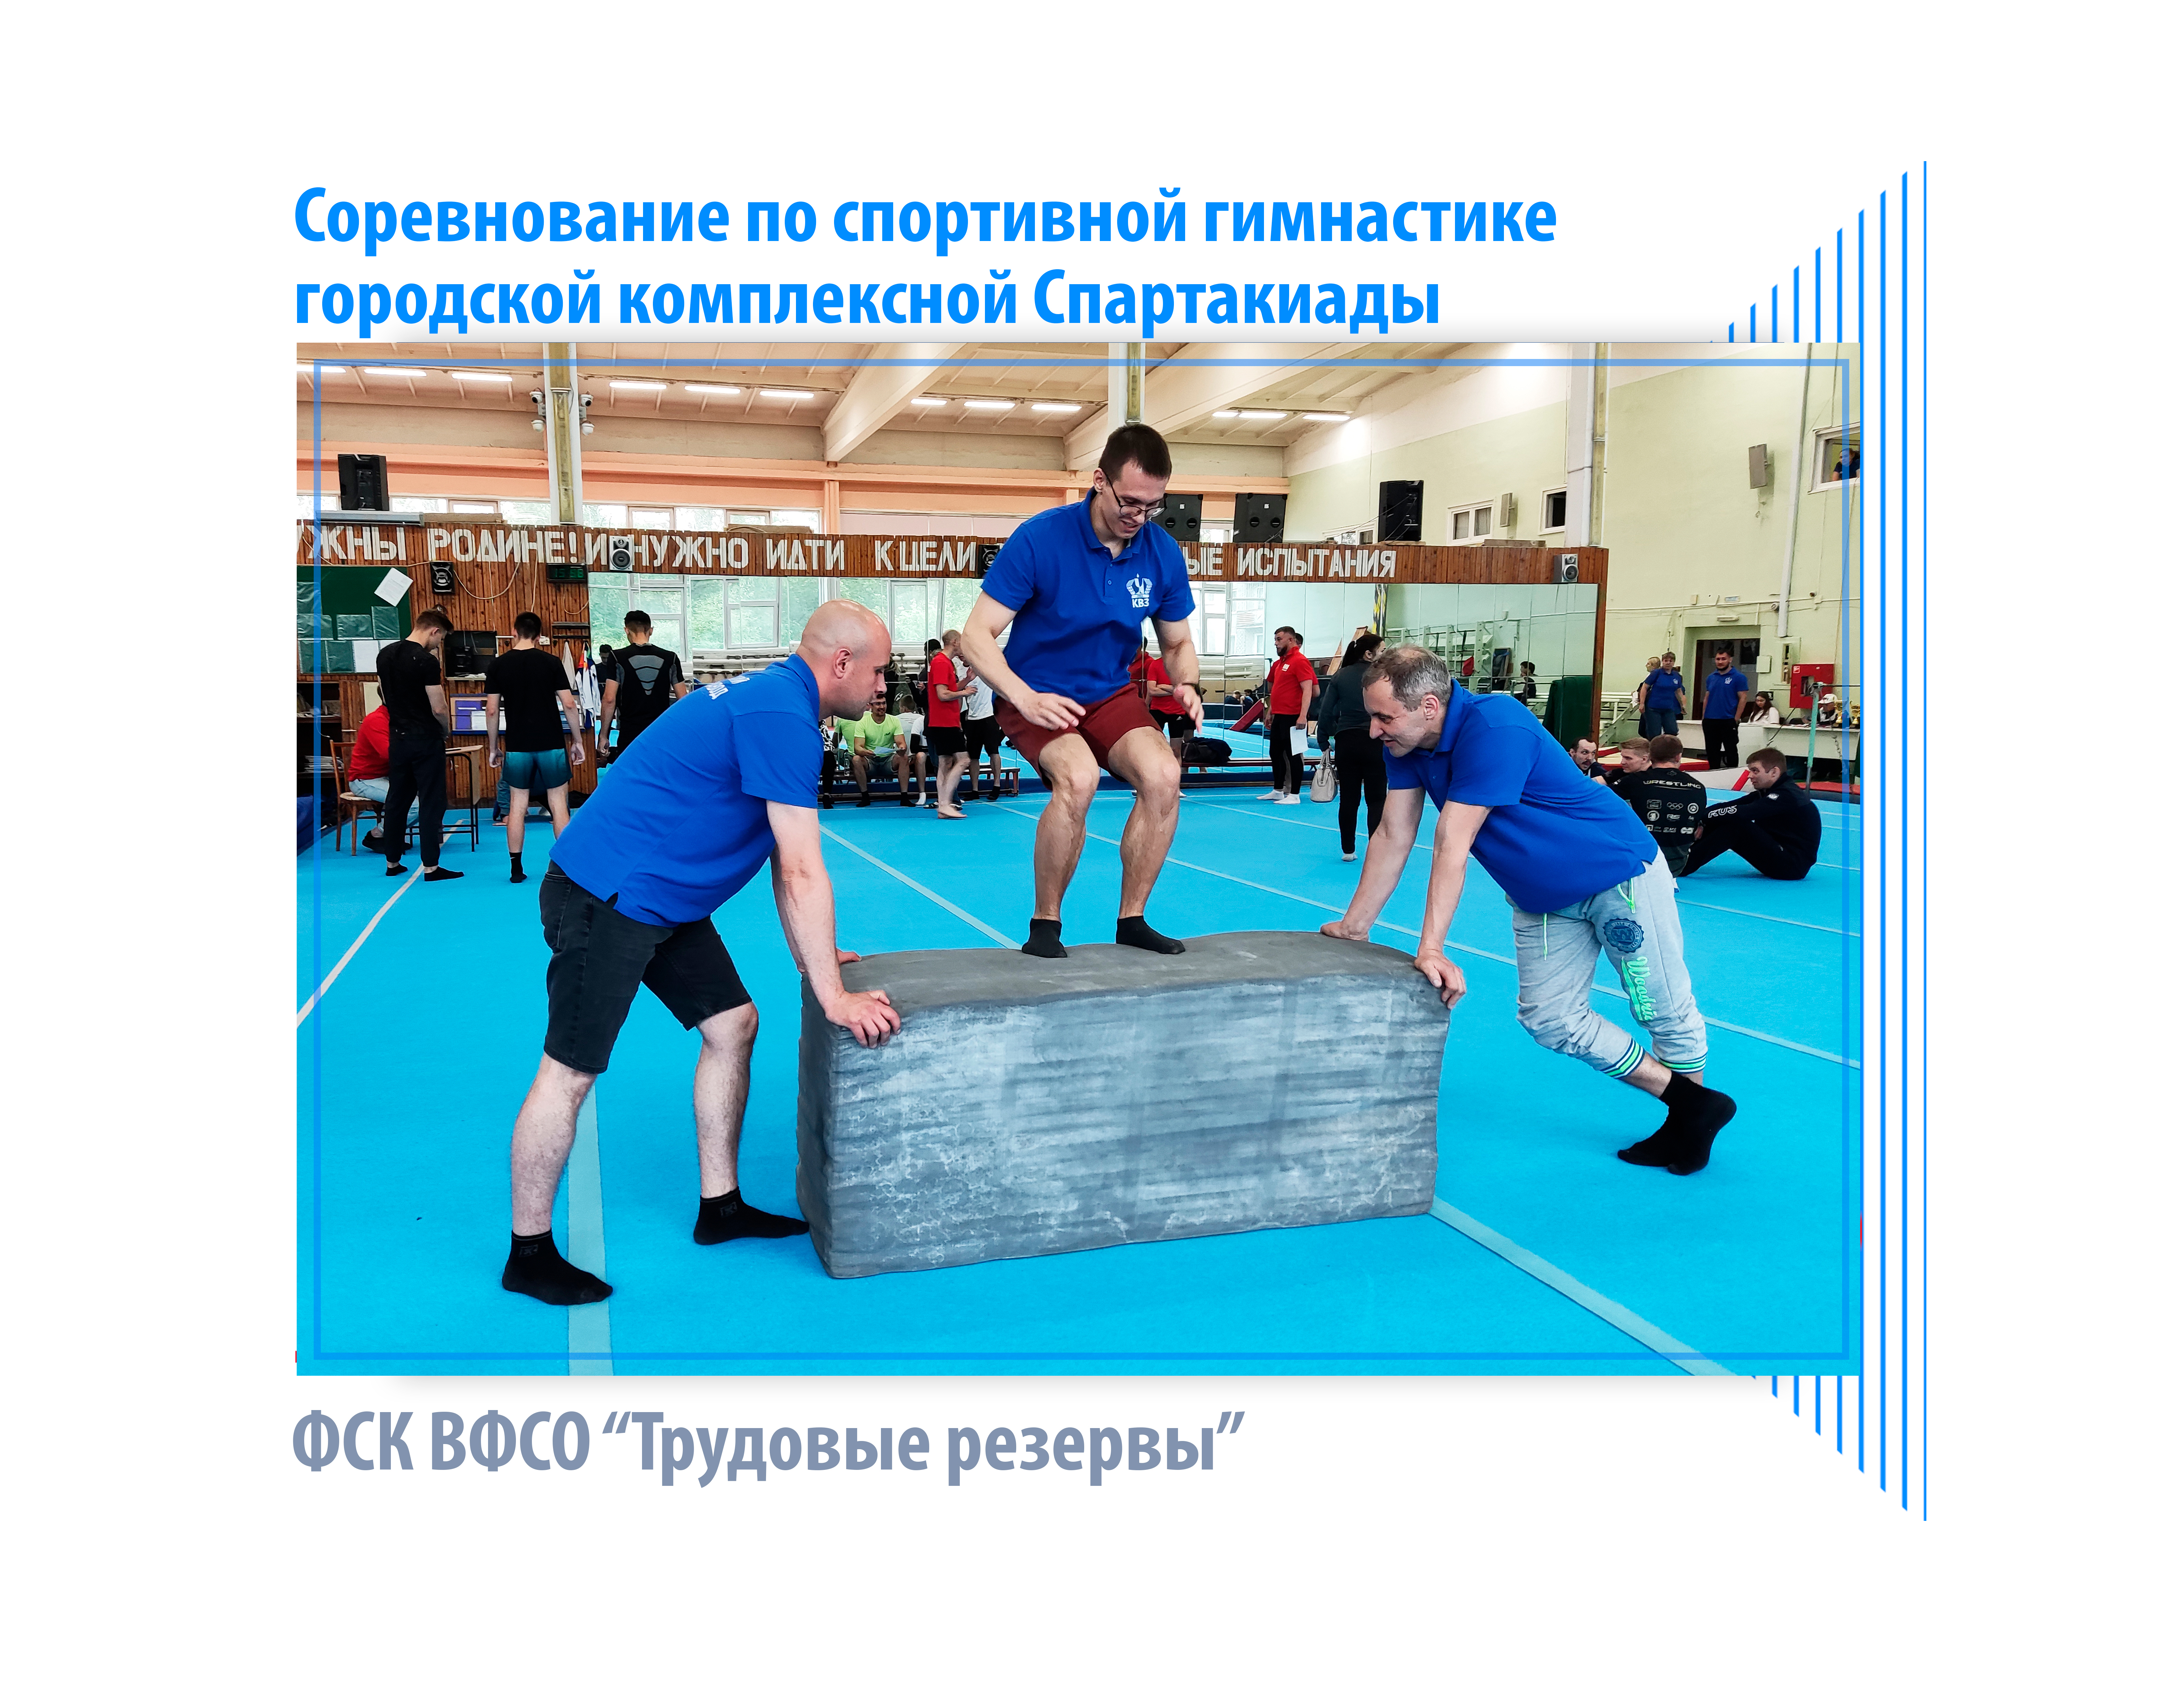 Сотрудники Красноярского Водочного Завода приняли участие в соревновании по спортивной гимнастике